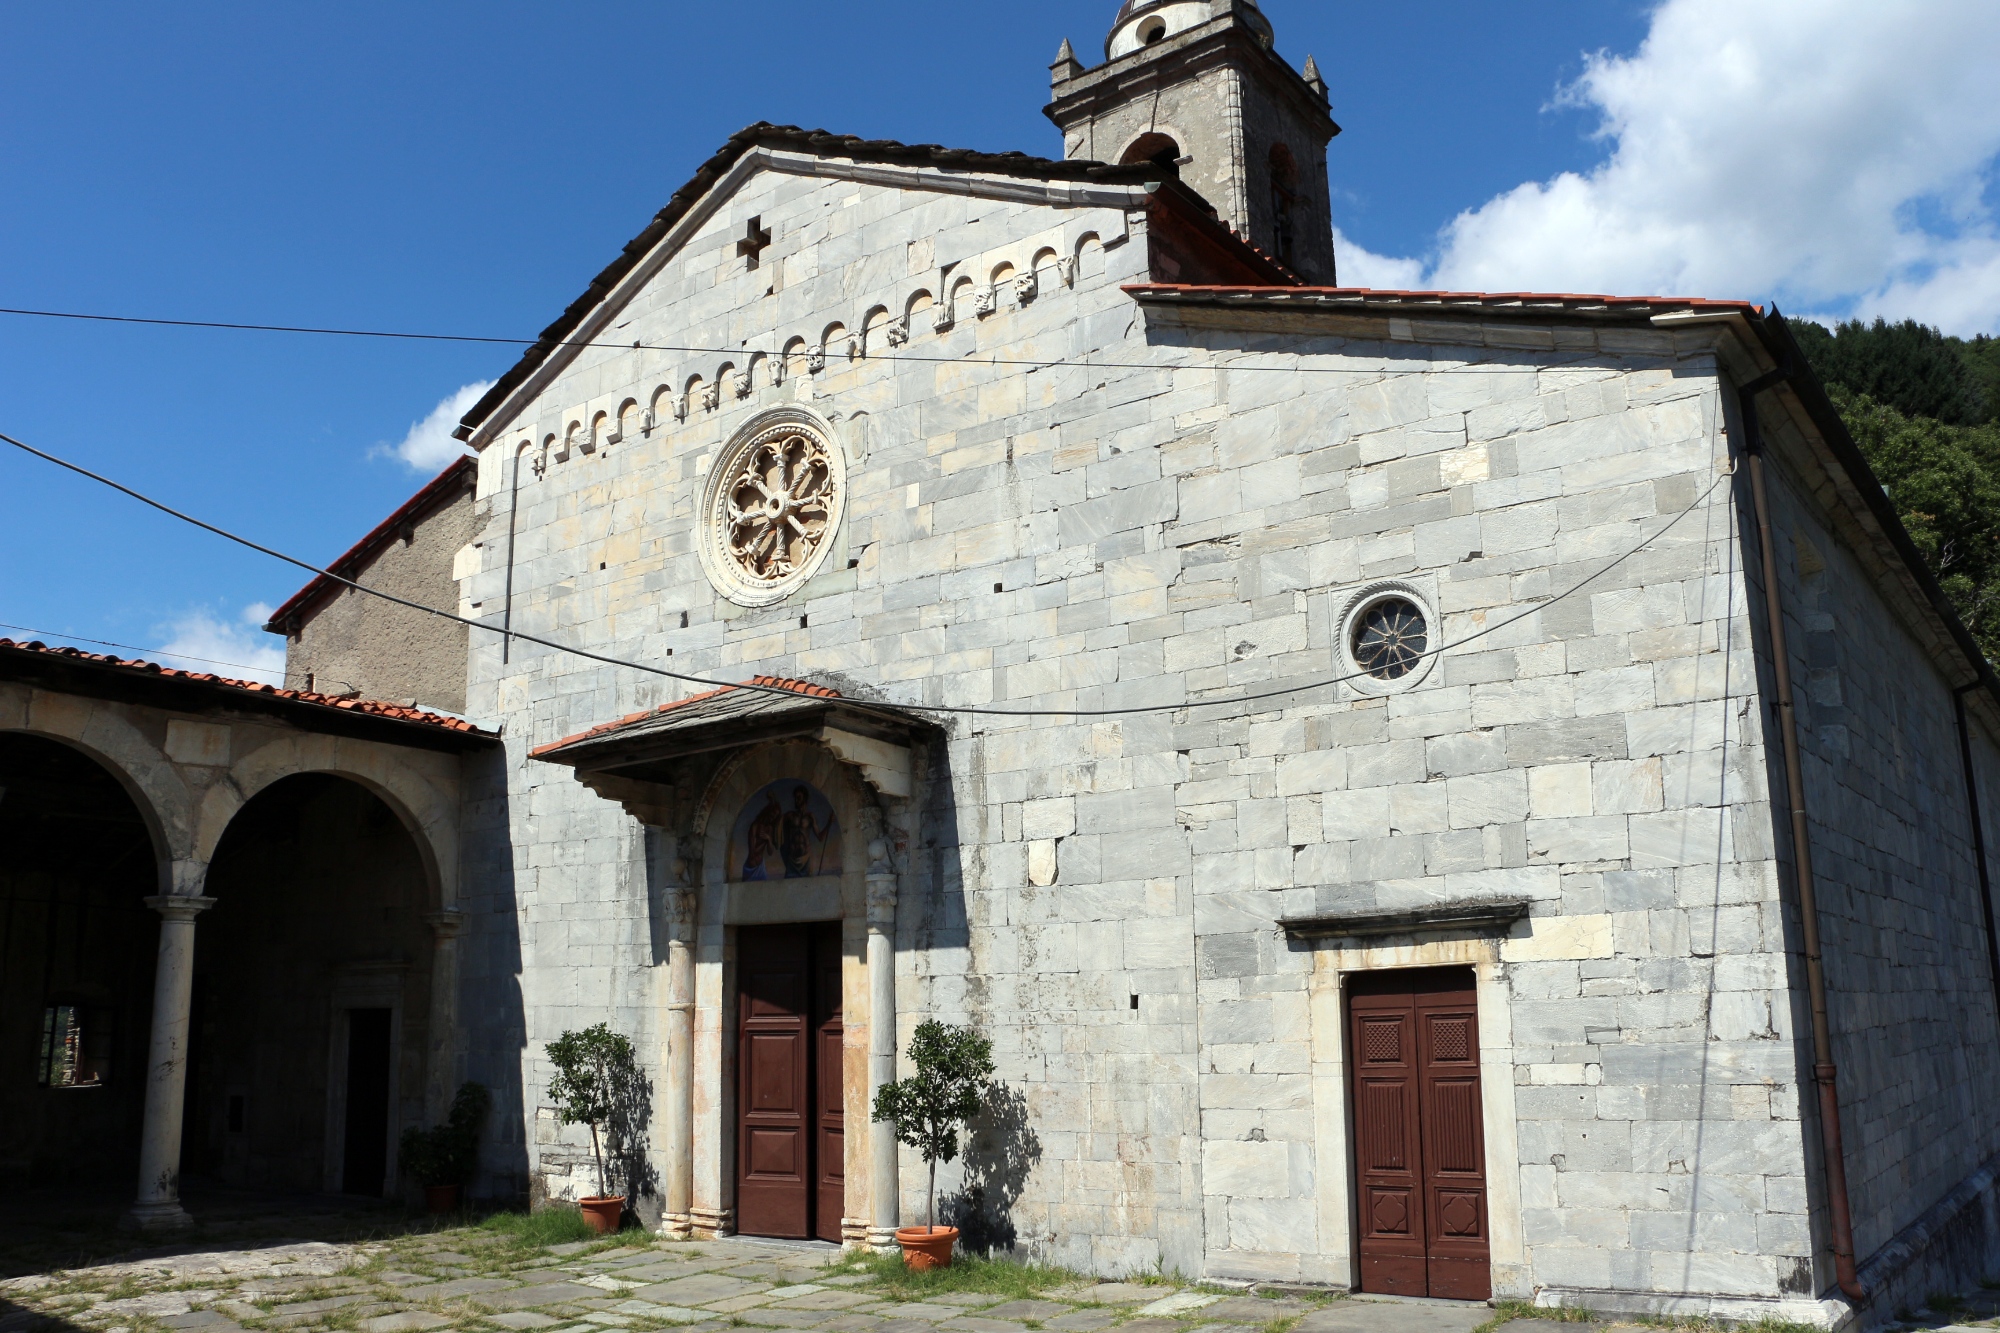 The church of Santa Maria Assunta in Stazzema